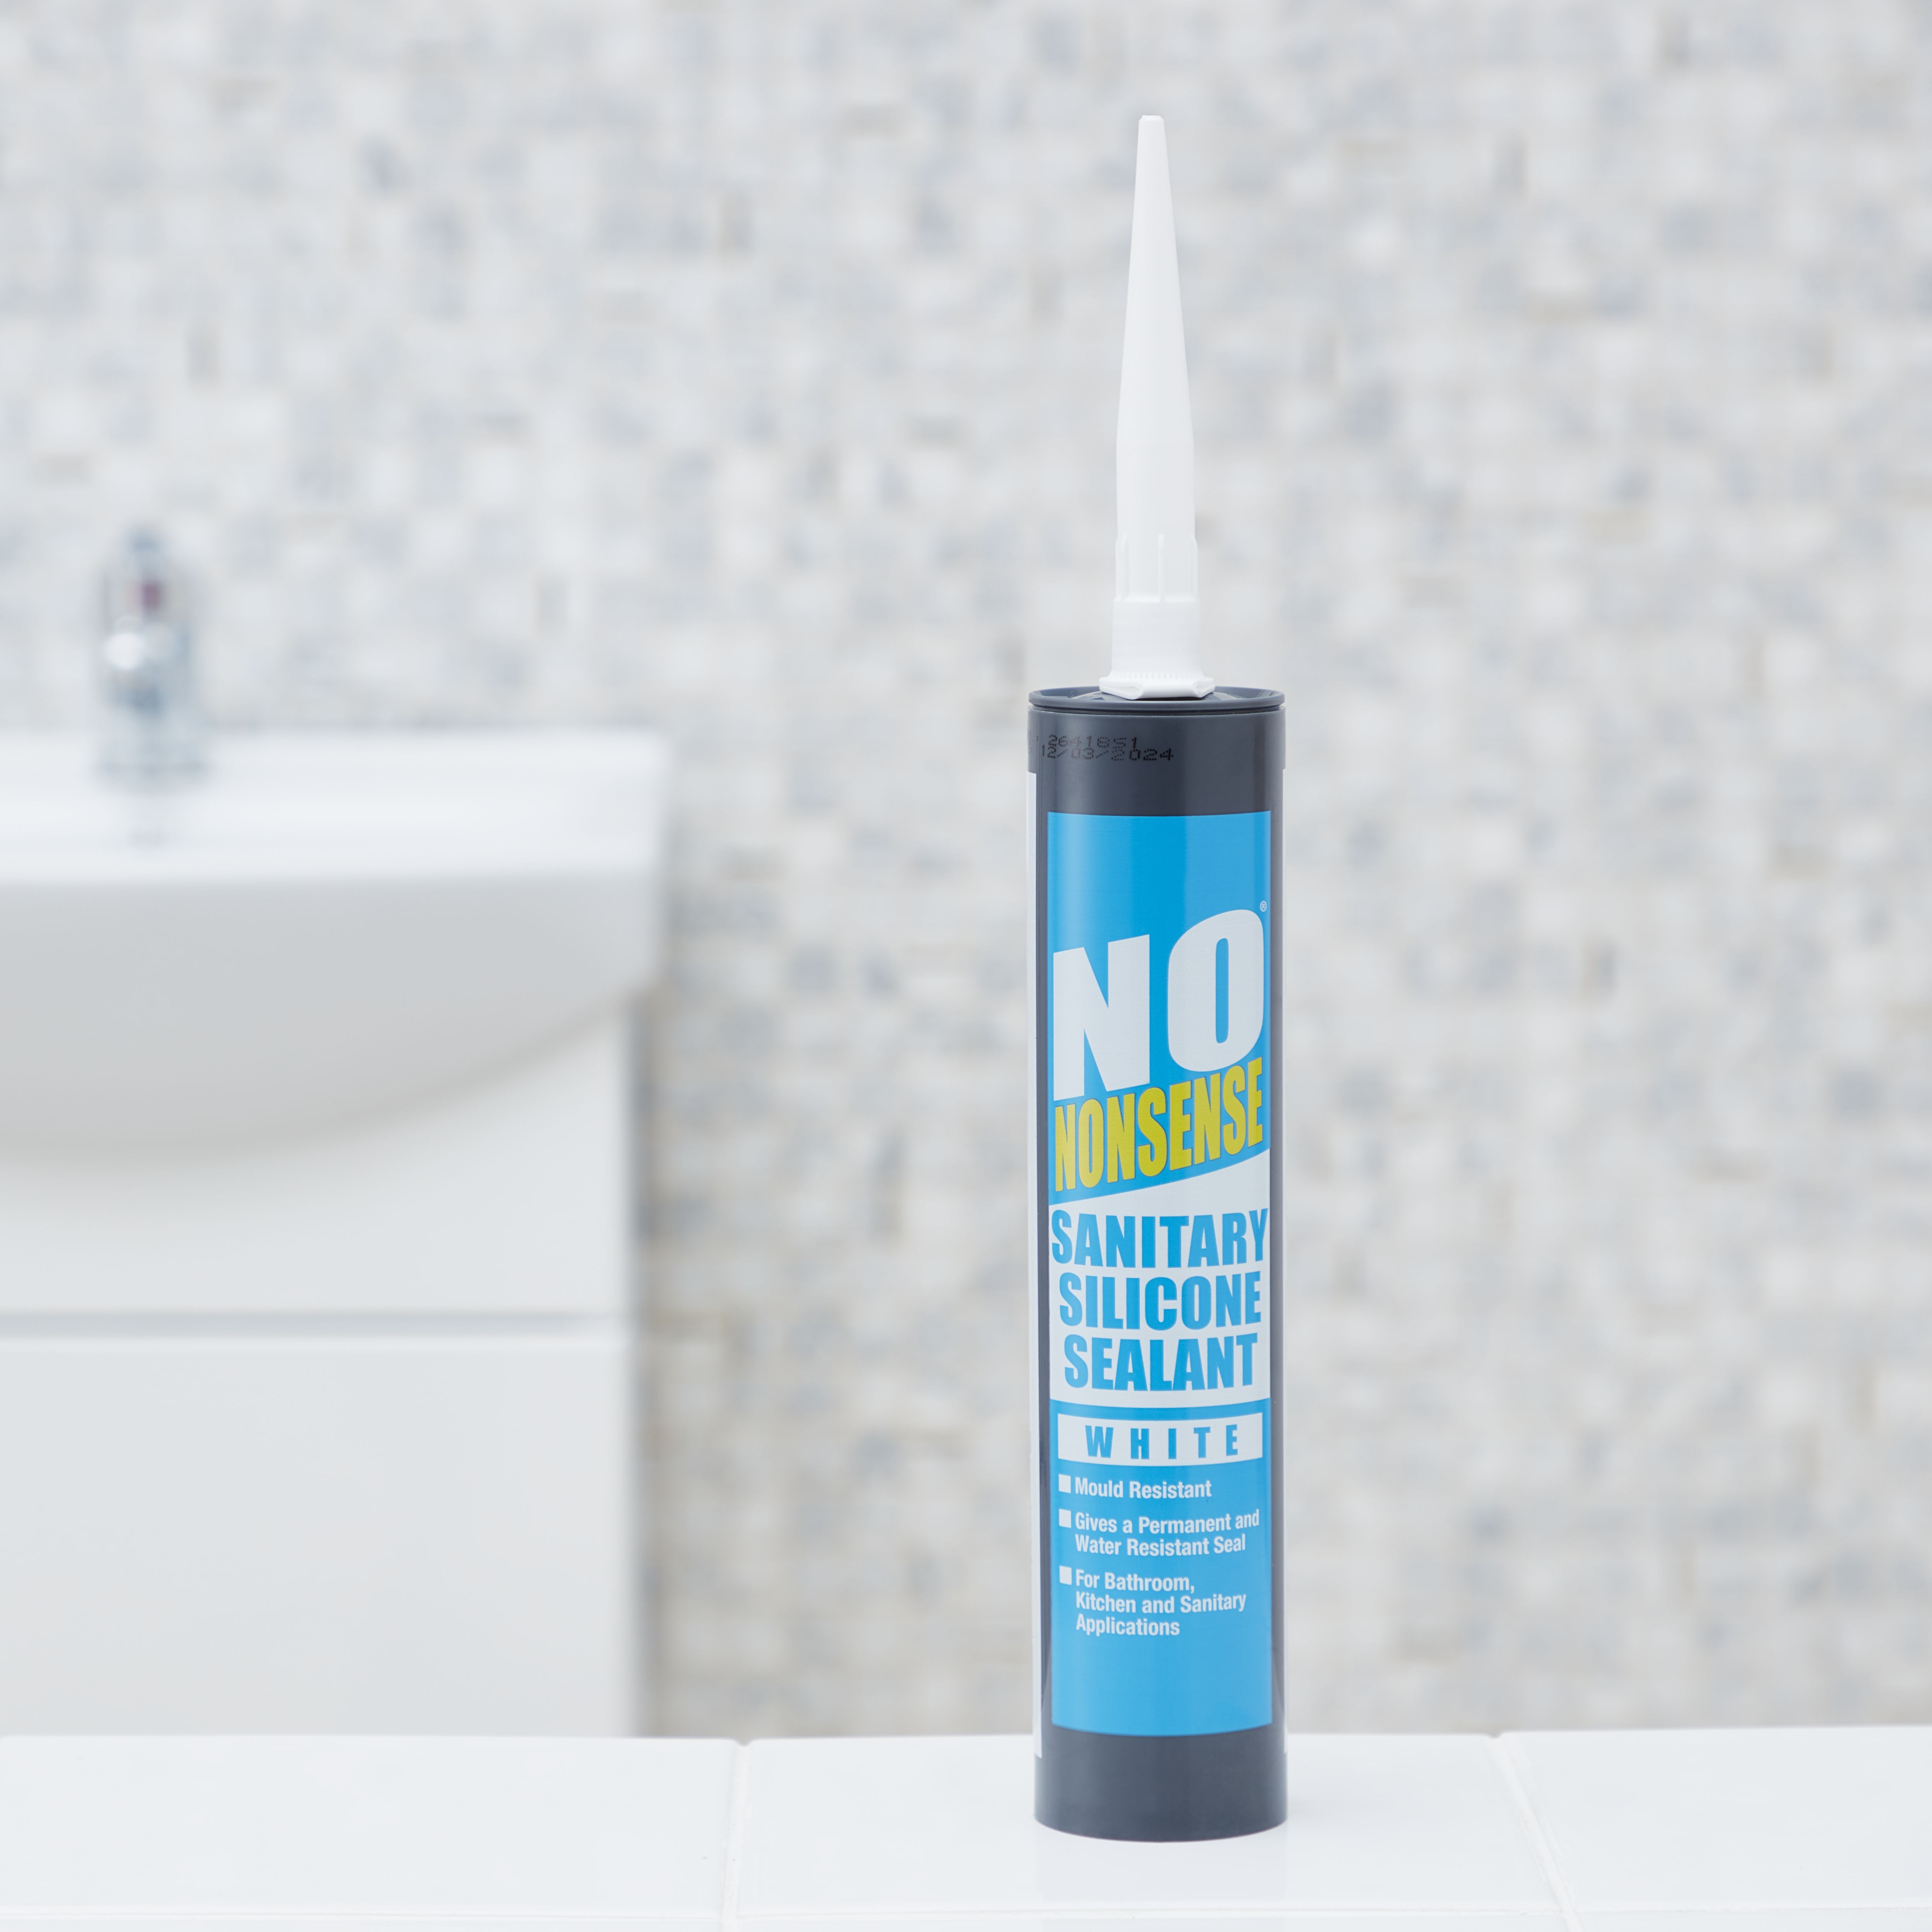 No Nonsense White Silicone-based Sanitary sealant, 310ml